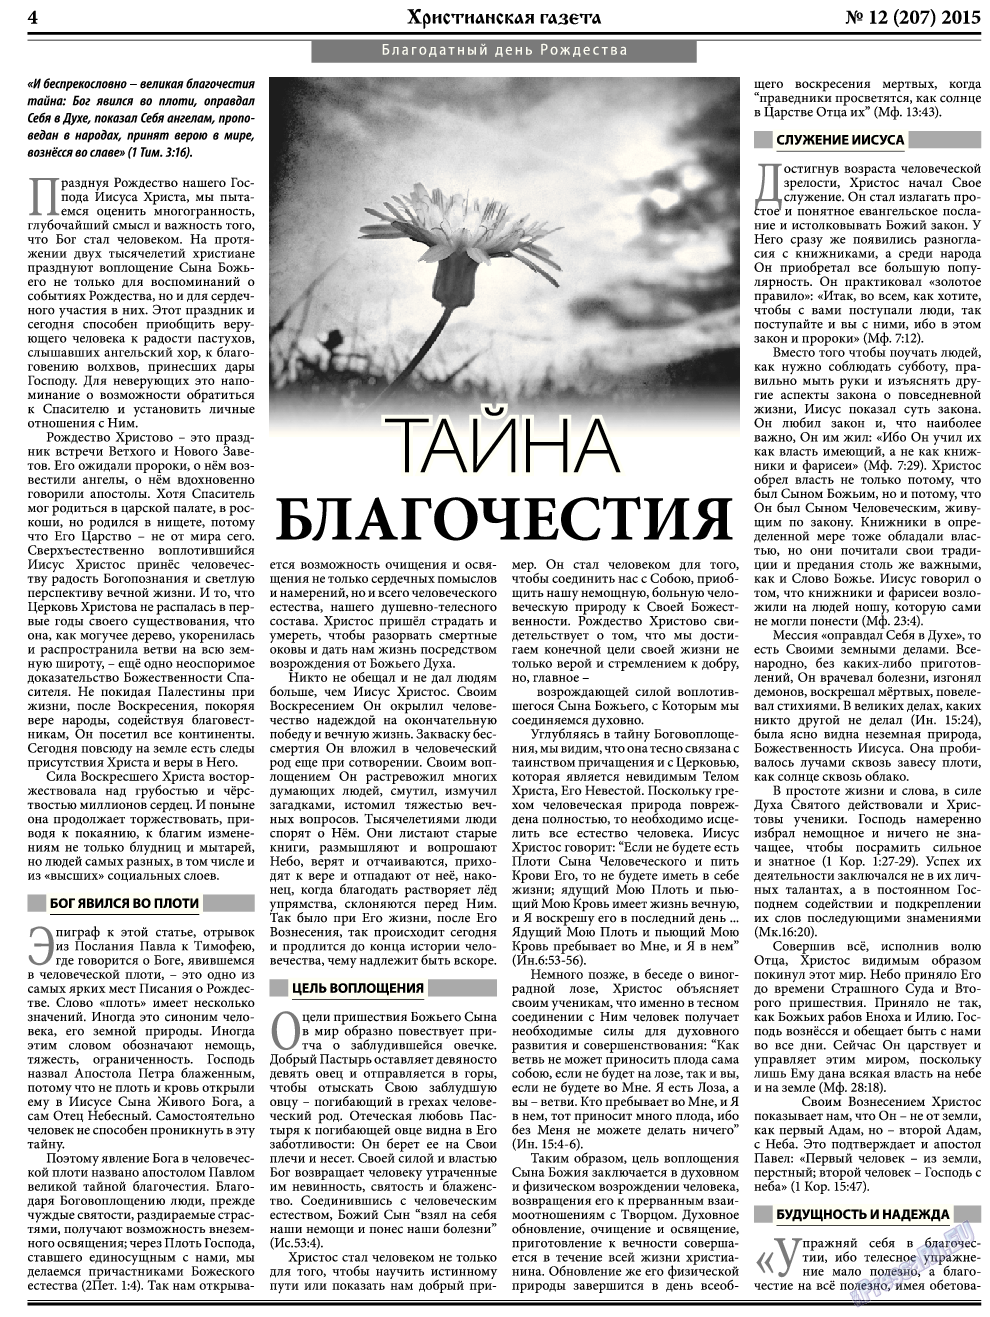 Христианская газета, газета. 2015 №12 стр.4